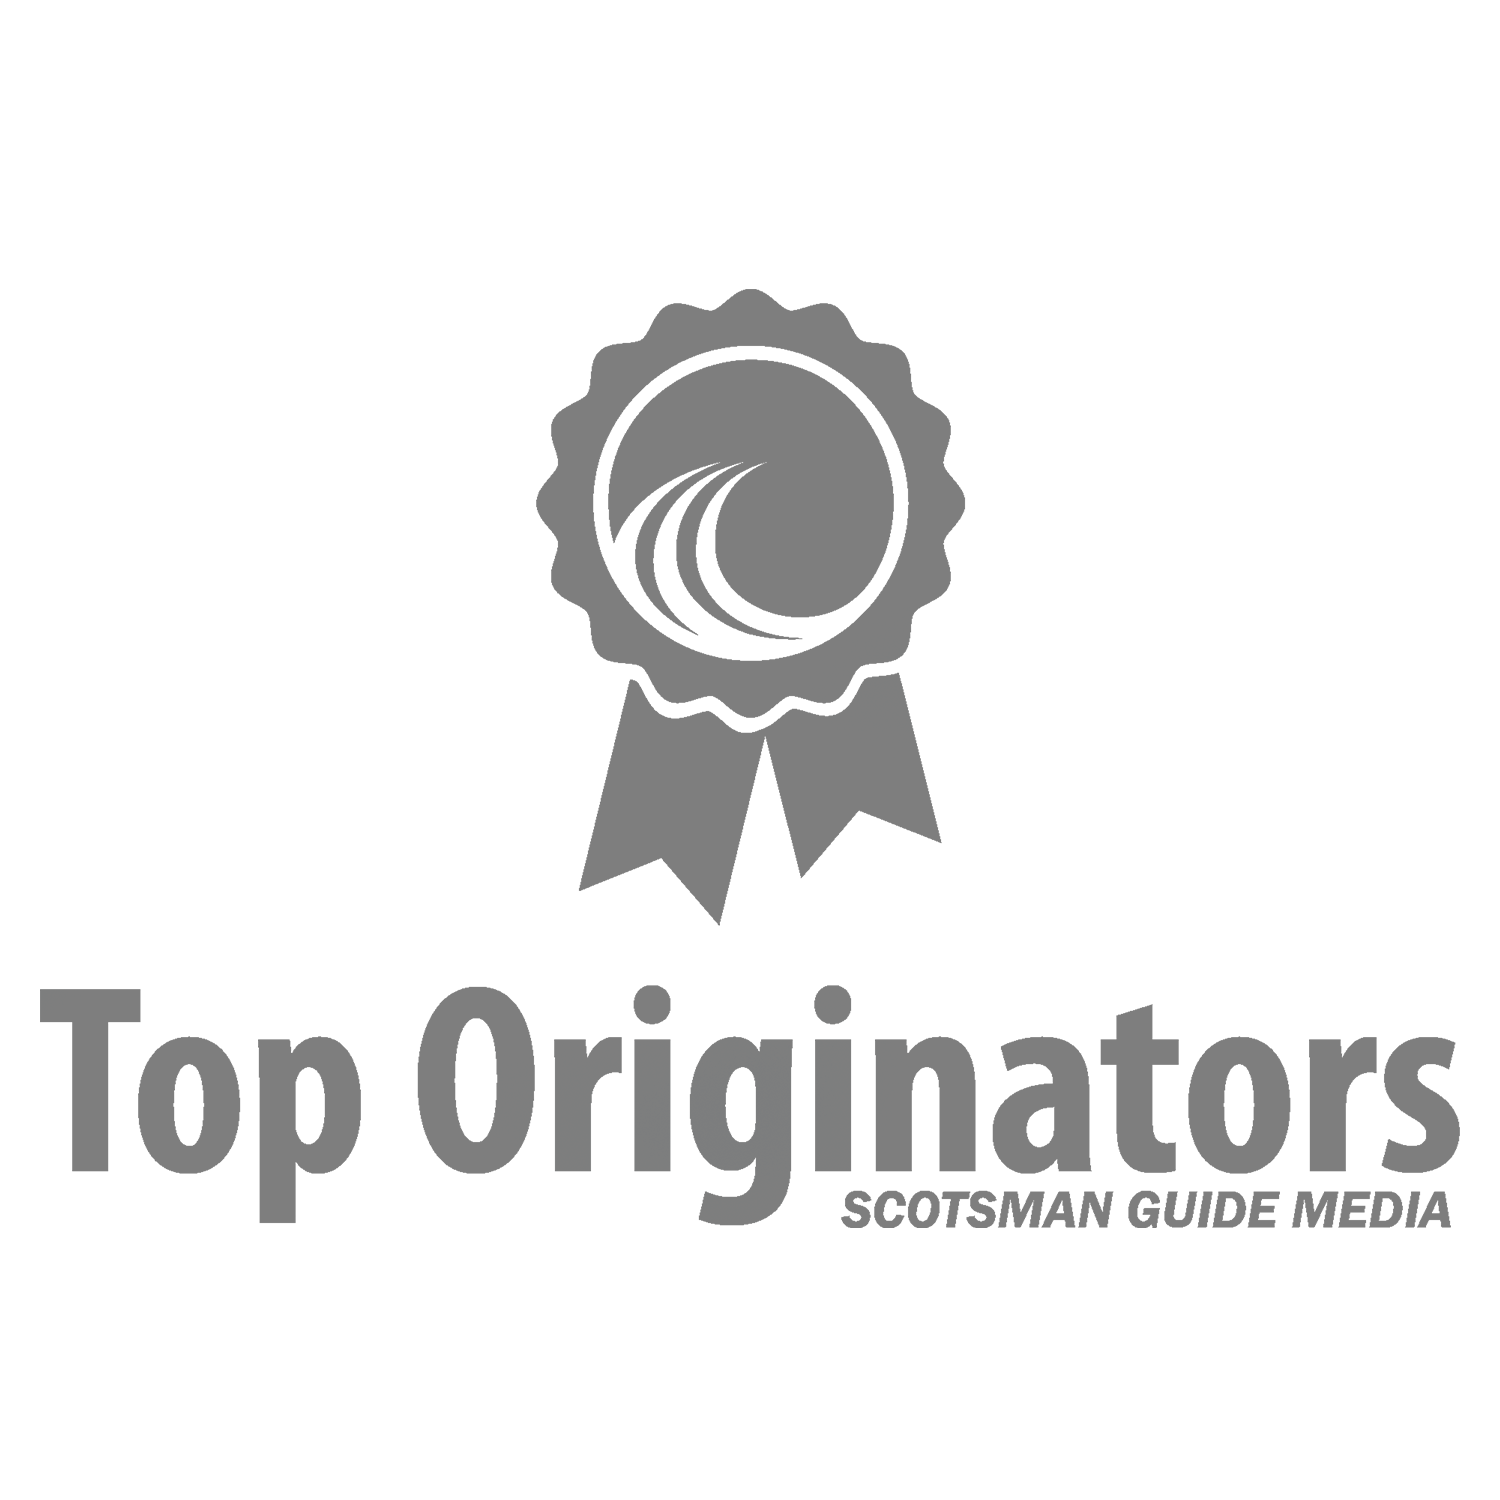 Top Originators - Scotsman Guide Media Logo